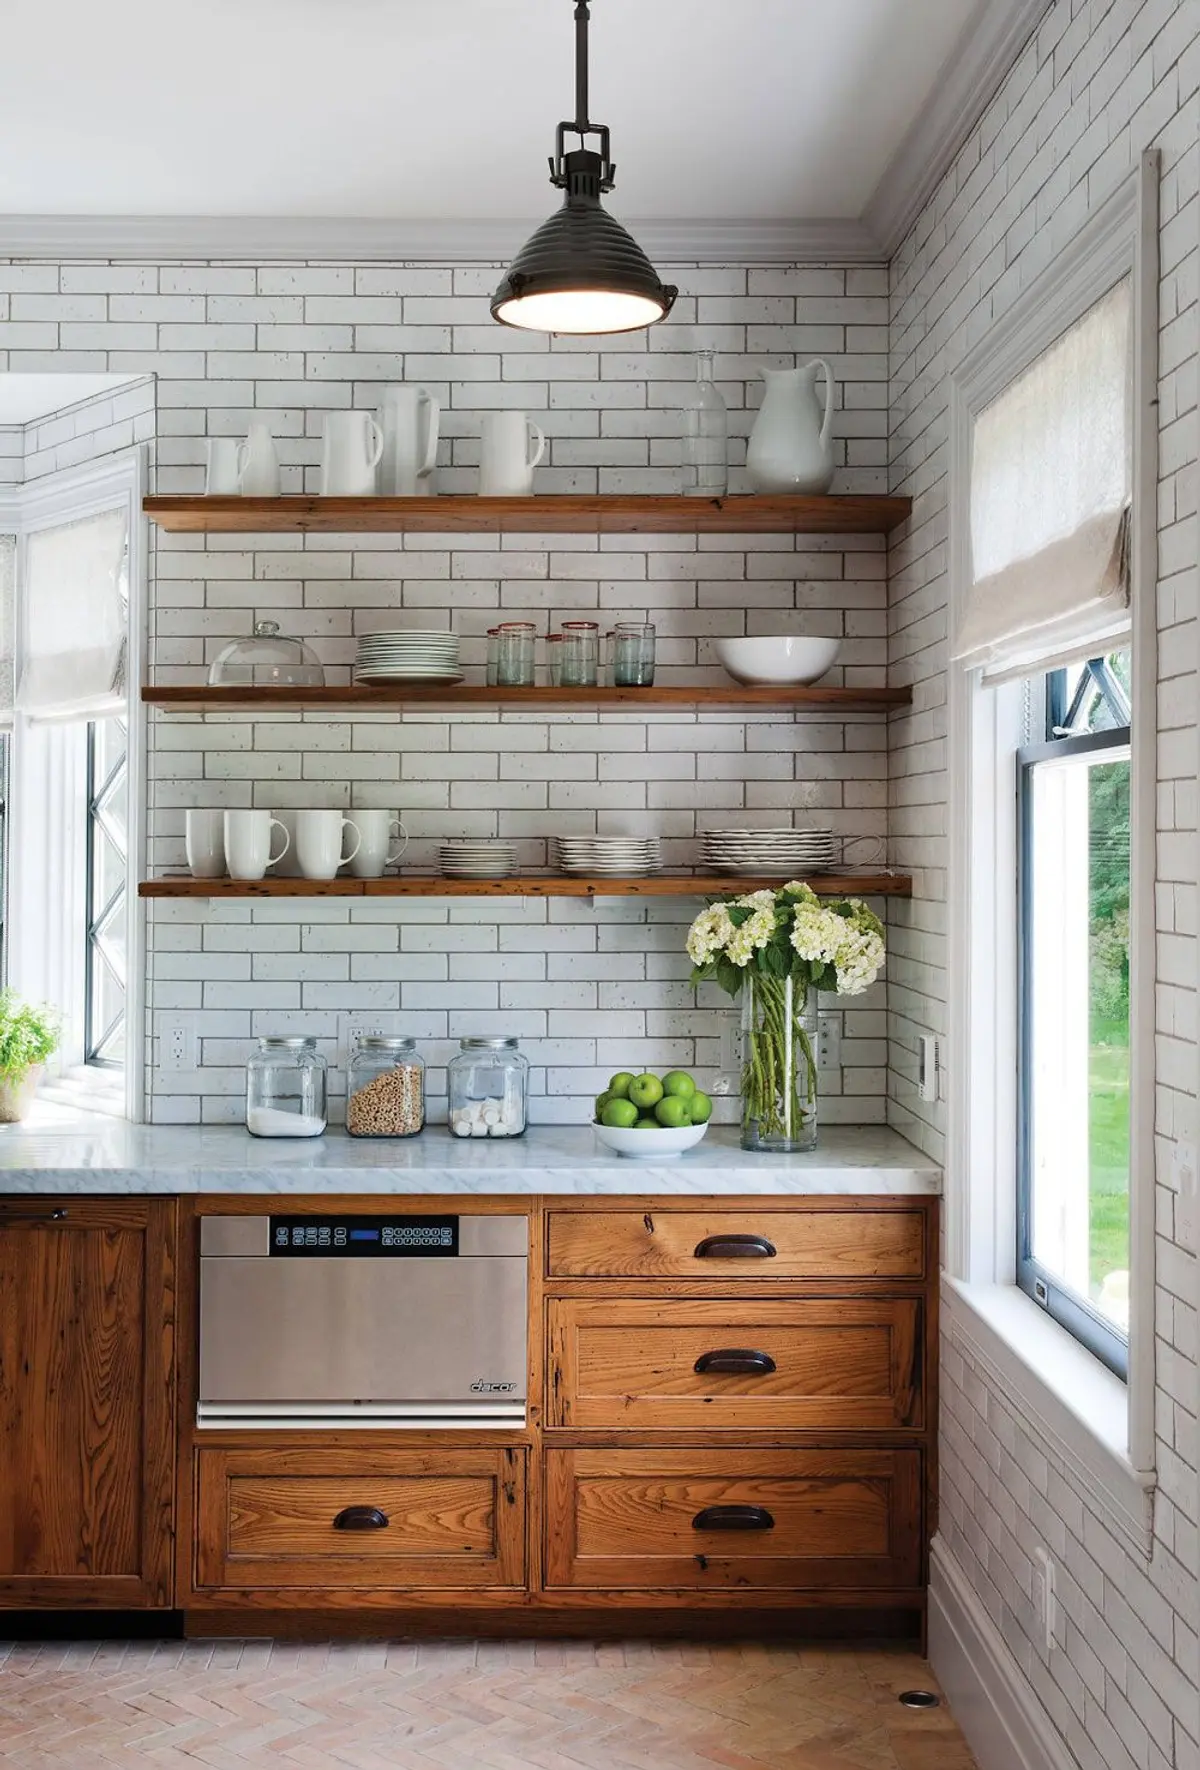 Open Shelves in Rustic Kitchen Ideas